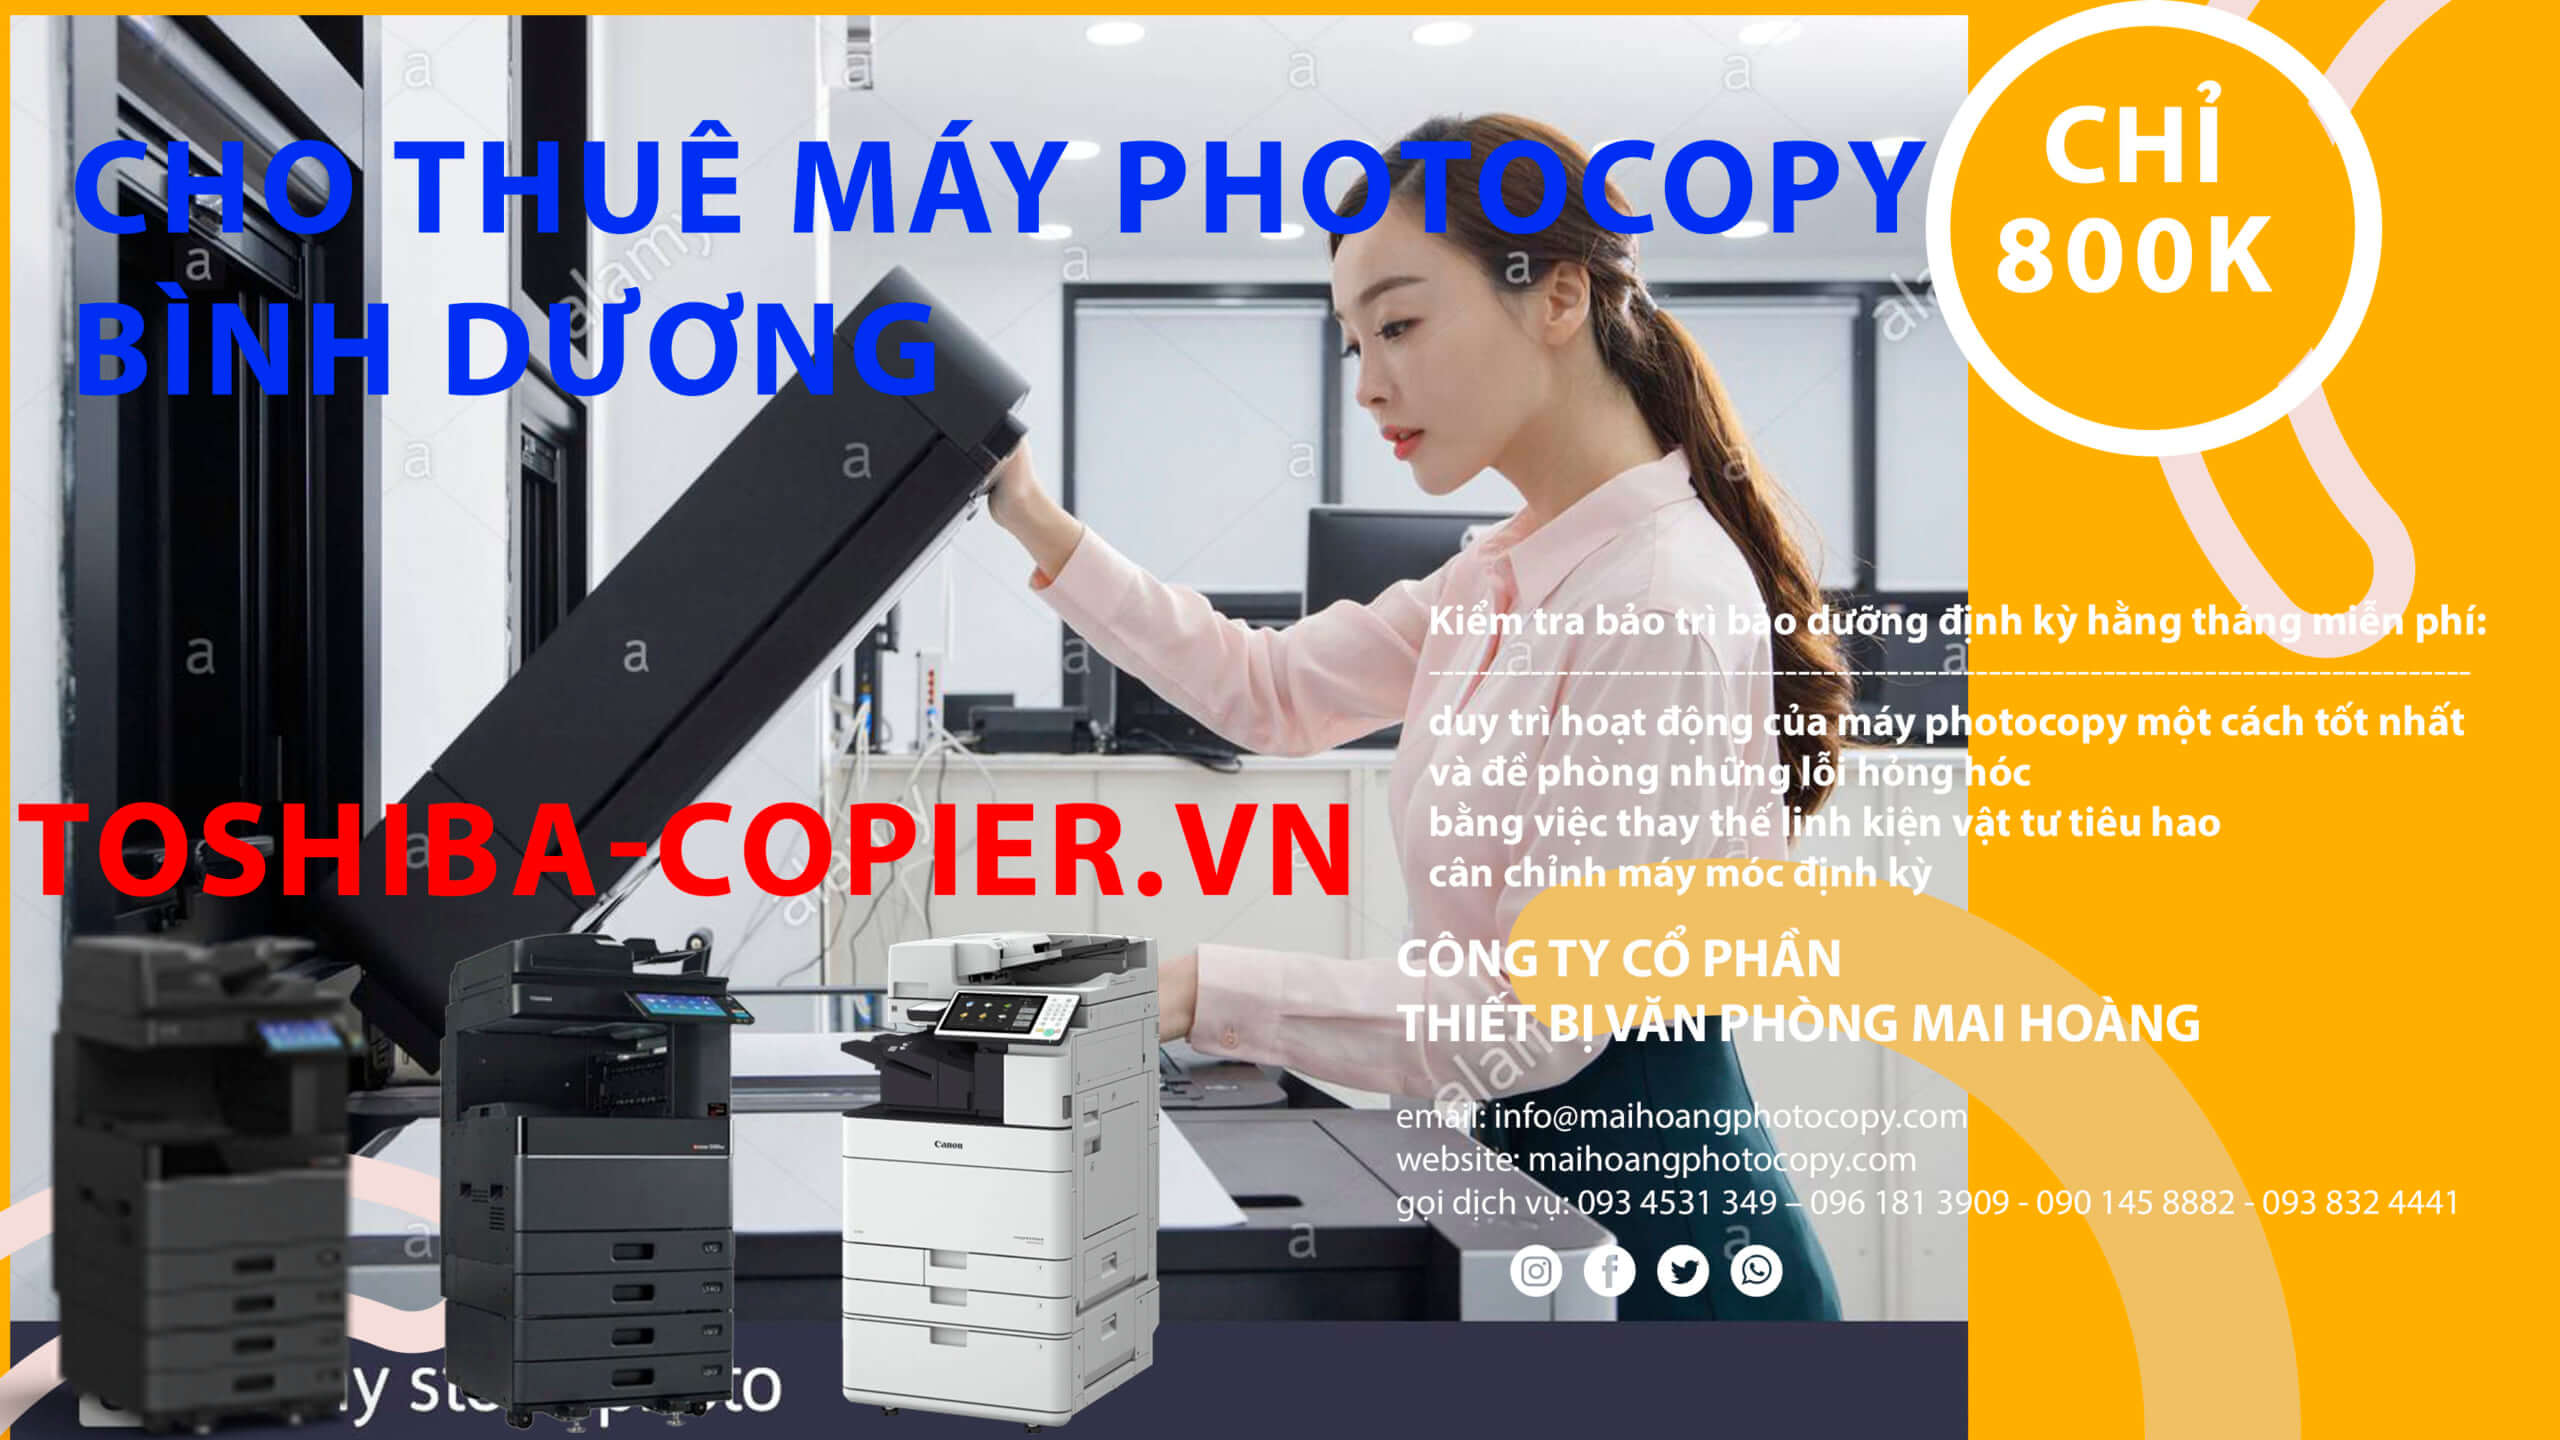 cho thuê máy photocopy ở bình dương thuê và thuê máy photocopy có thể được thanh toán hoàn toàn mỗi tháng trong khi khoản mua trực tiếp phải được khấu hao theo thời gian.